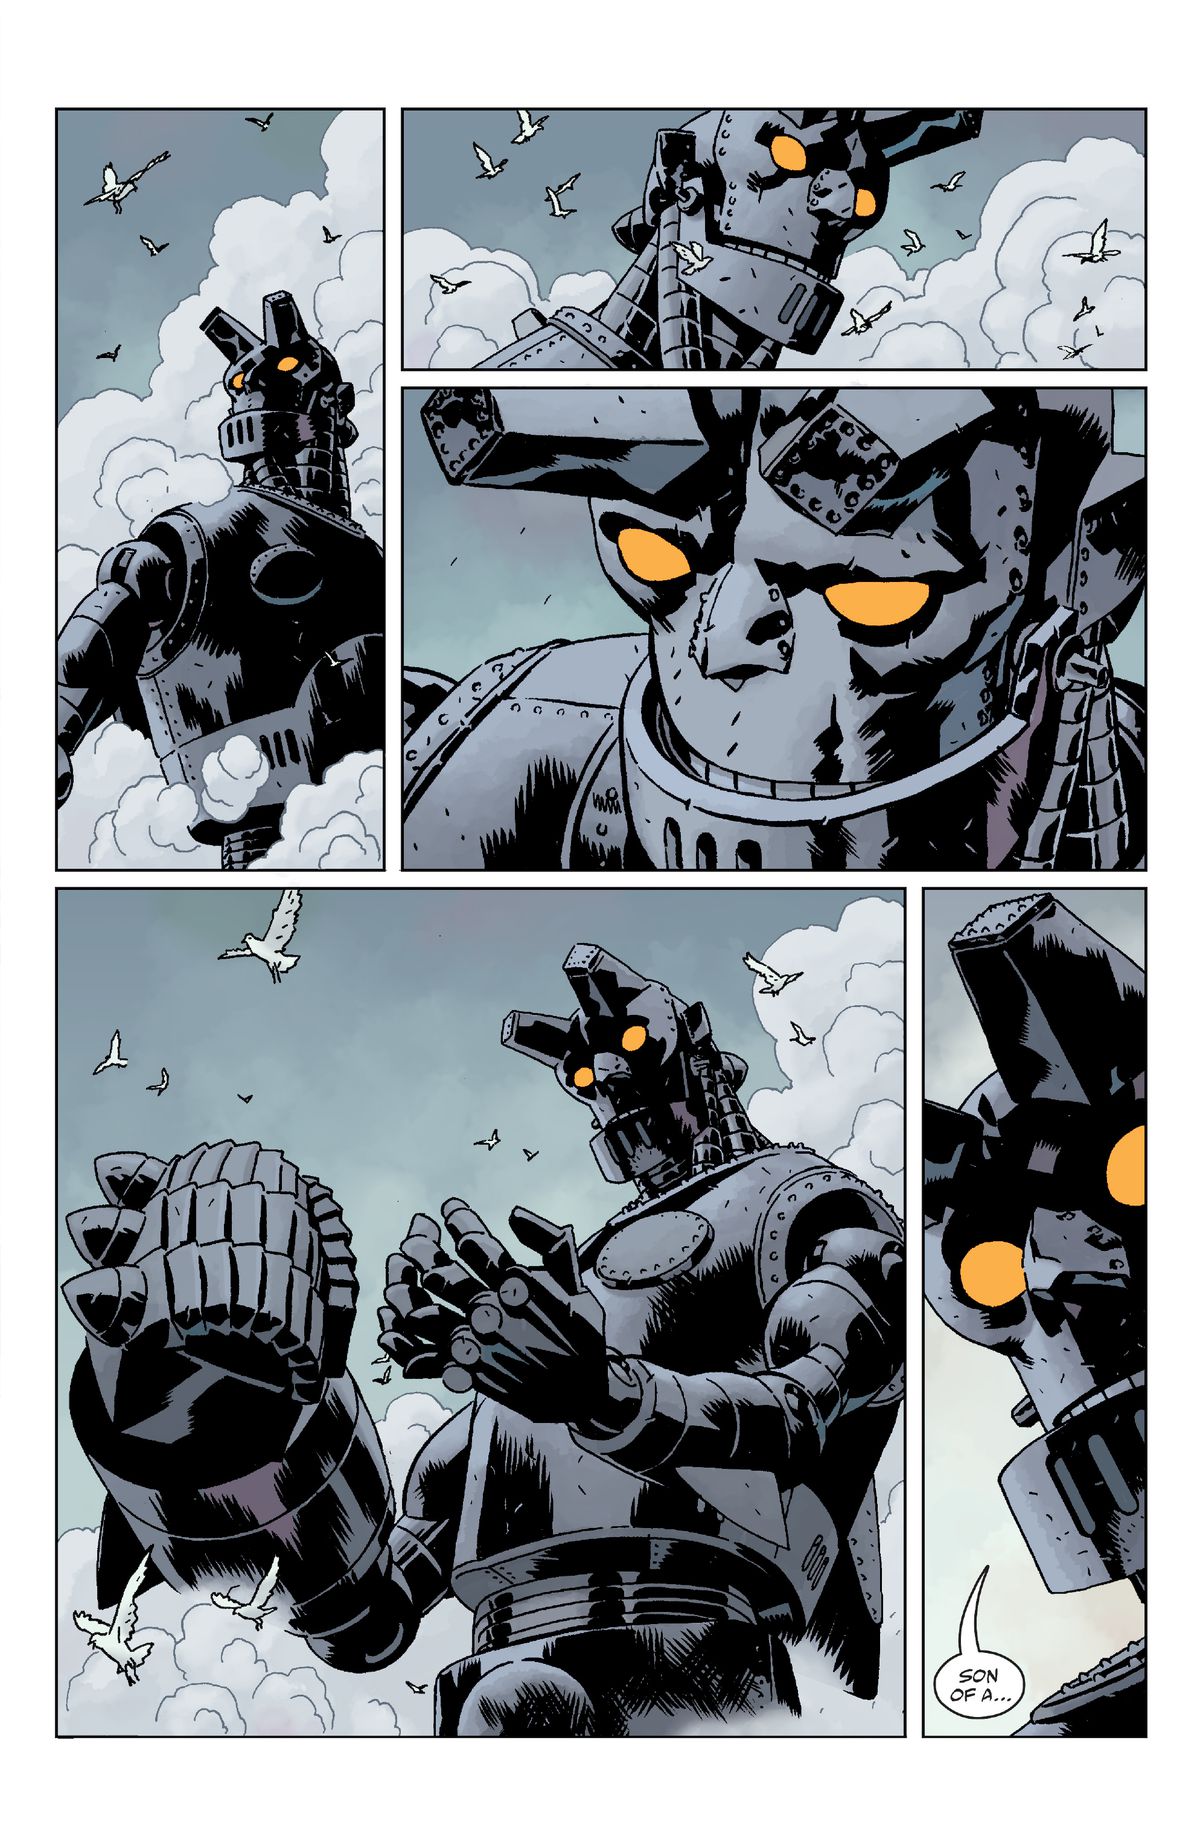 Giant Robot Hellboy tittar på himlen och måsarna som flyger runt honom.  Han tittar på sina metallhänder.  Sedan säger han 